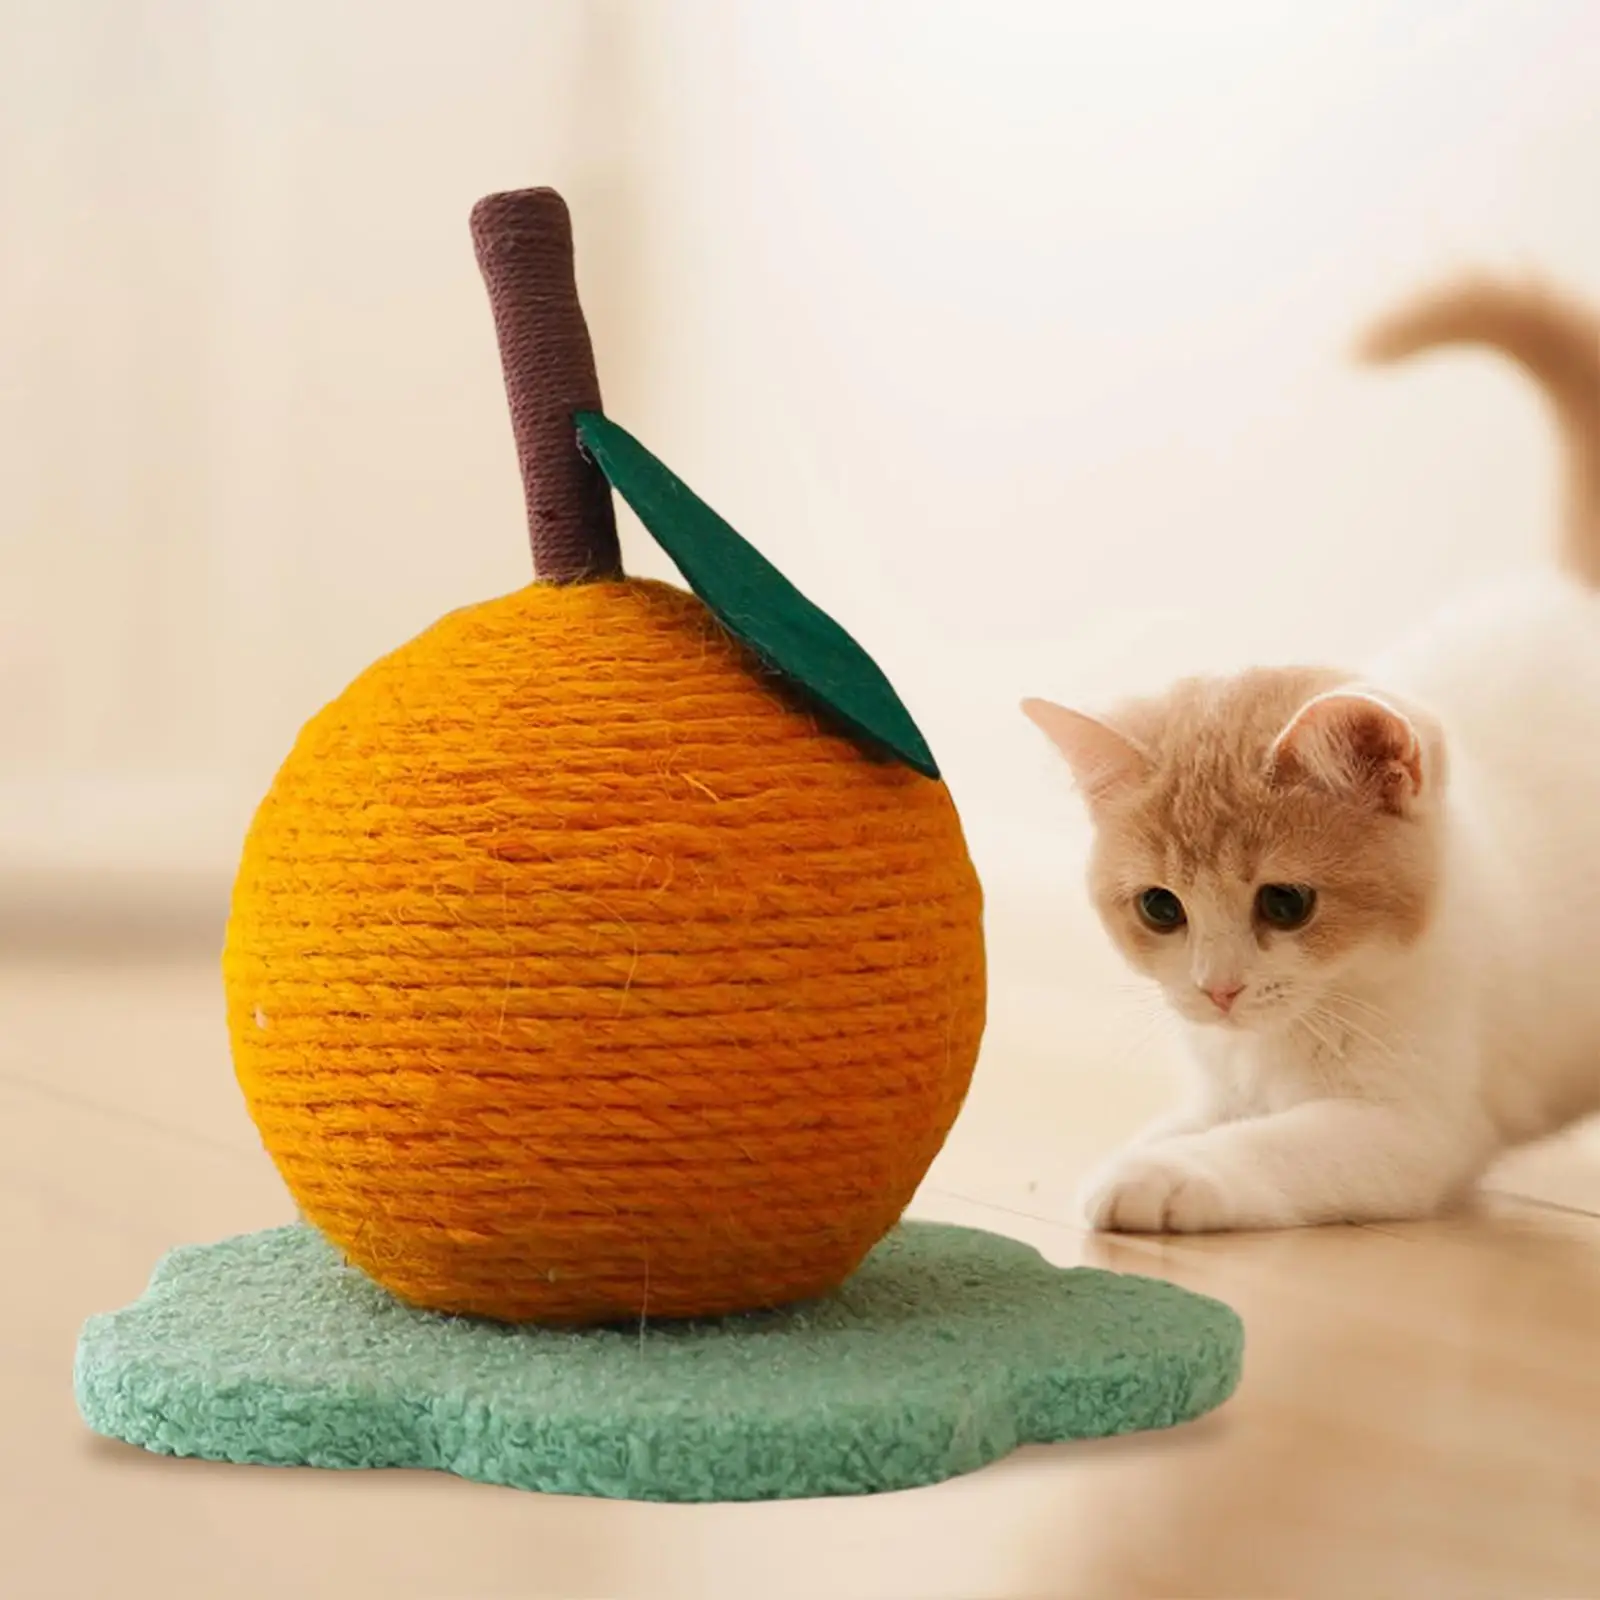 Cat Scratching Post, Cat Scratcher with Sisal Ball, Cat Scratch Post for Cat, Kitten, Home Decor